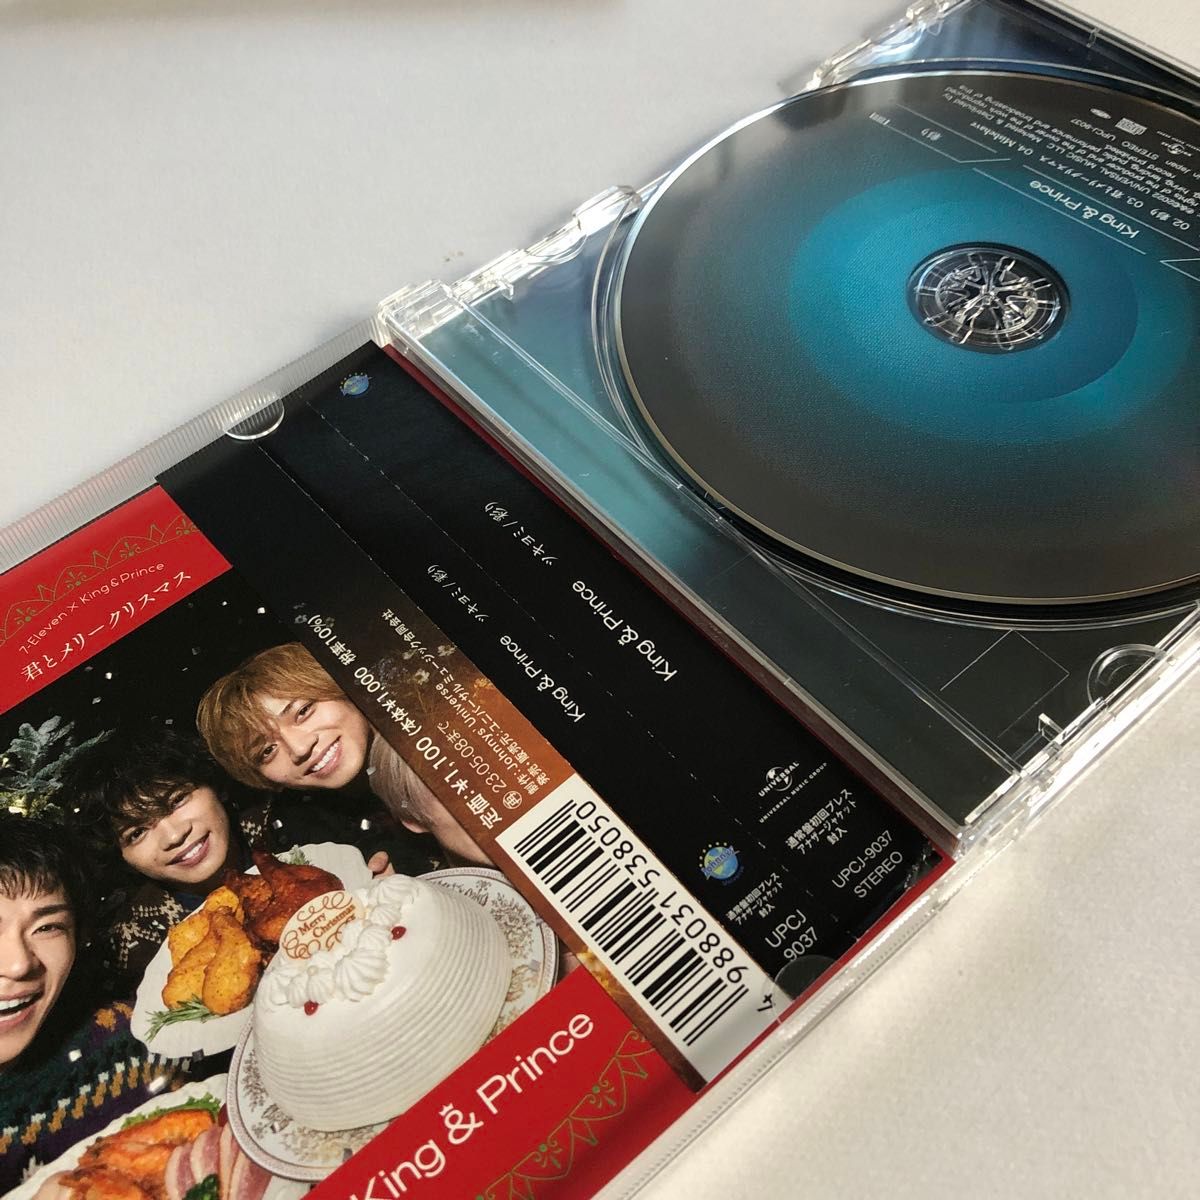 King & Prince 　ツキヨミ/彩り (初回限定盤A+初回限定盤B+通常盤+Dear Tiara盤) DVD付 CD